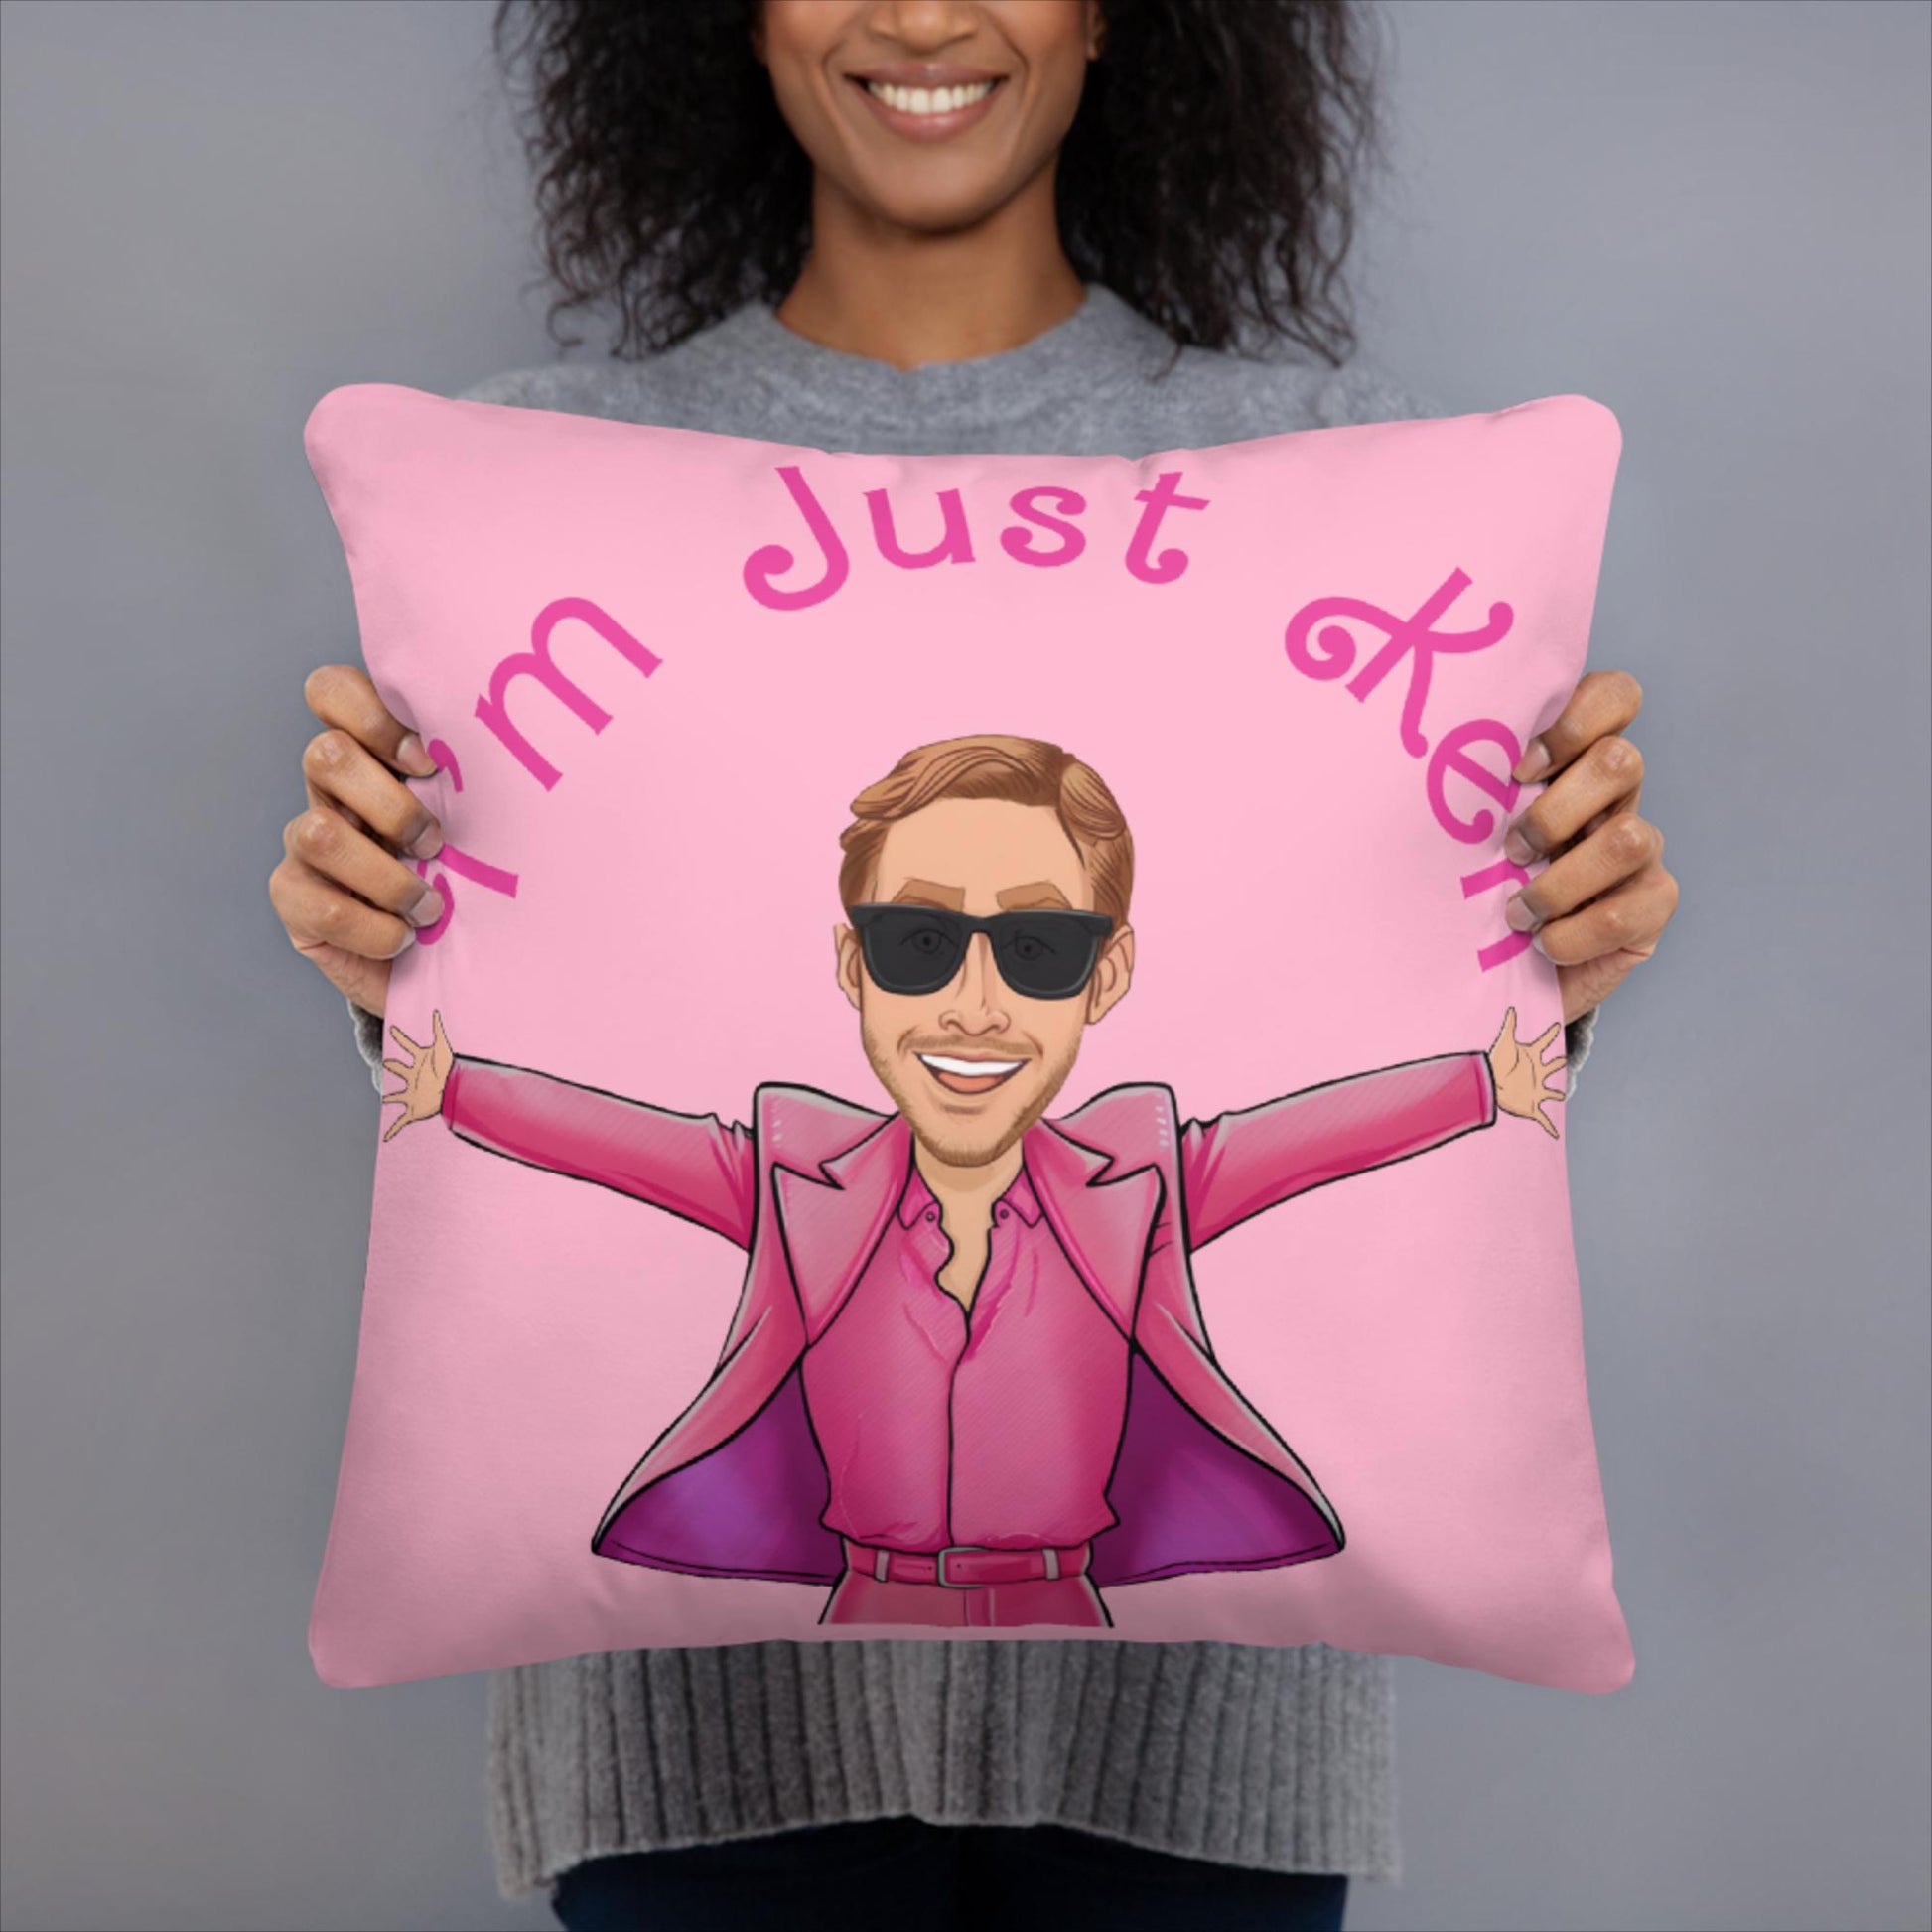 Ken Barbie Ryan Gosling I'm Just Ken Pillow Next Cult Brand